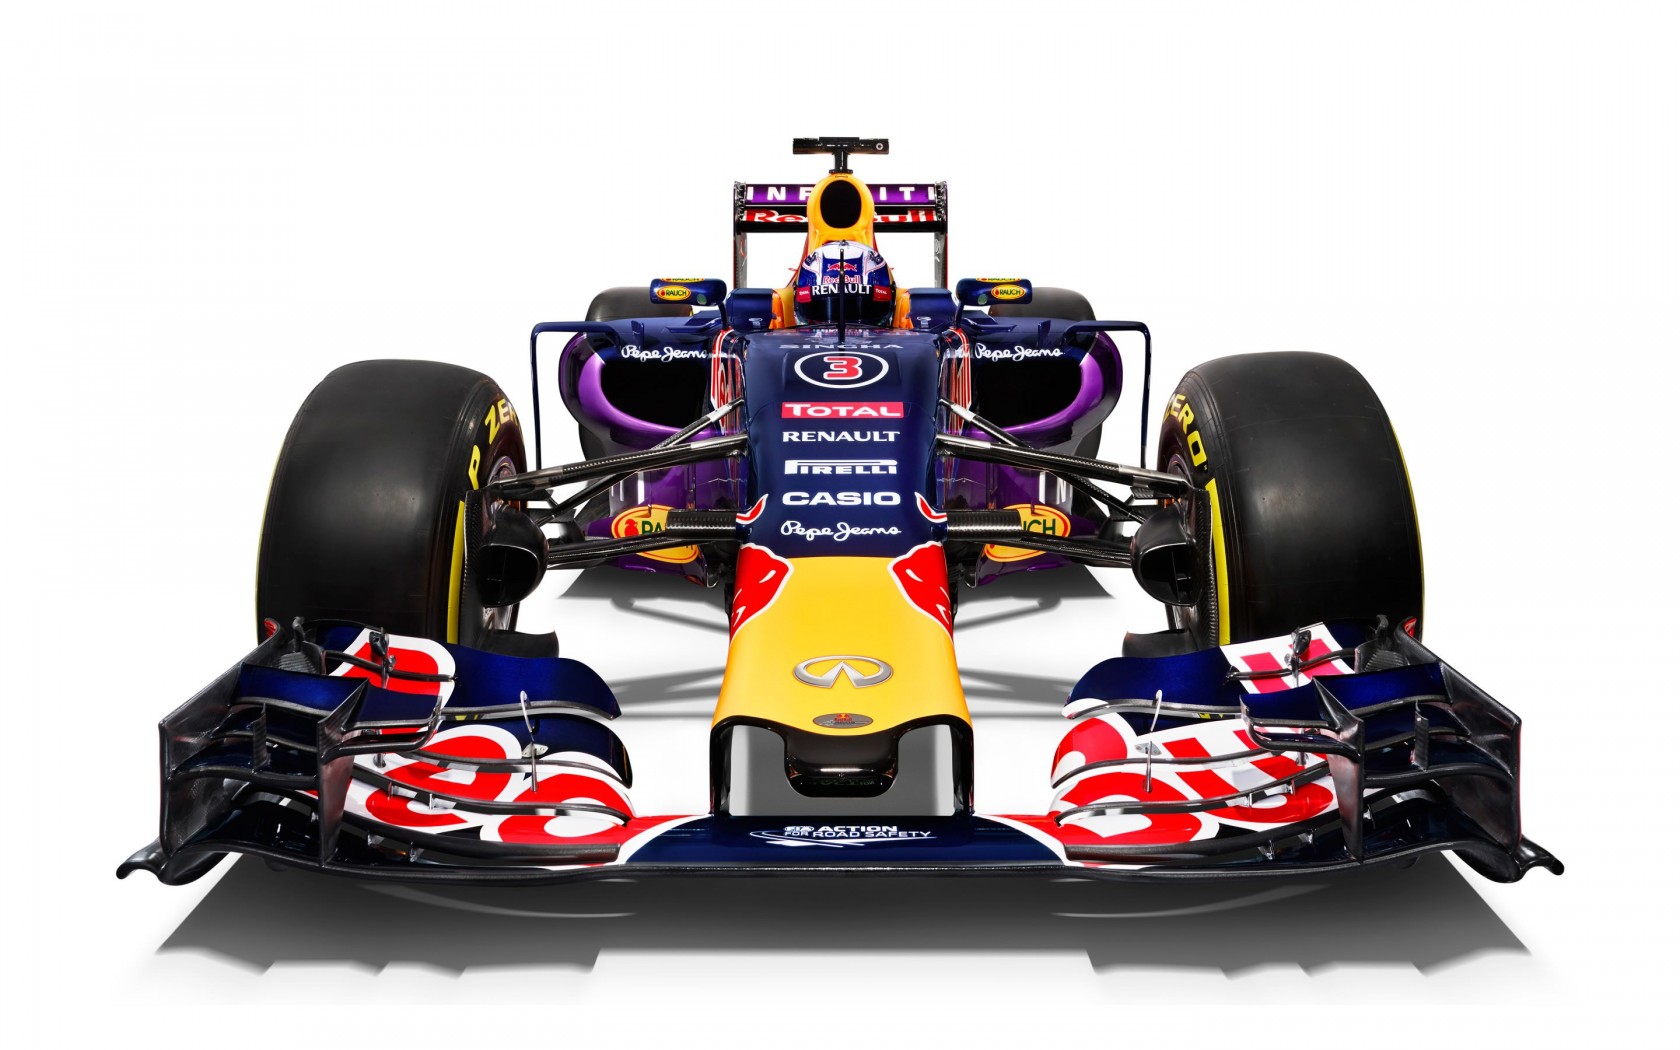 Infiniti Red Bull Racing RB11 2015 Formula 1 Car Wallpaper for Desktop 1680x1050